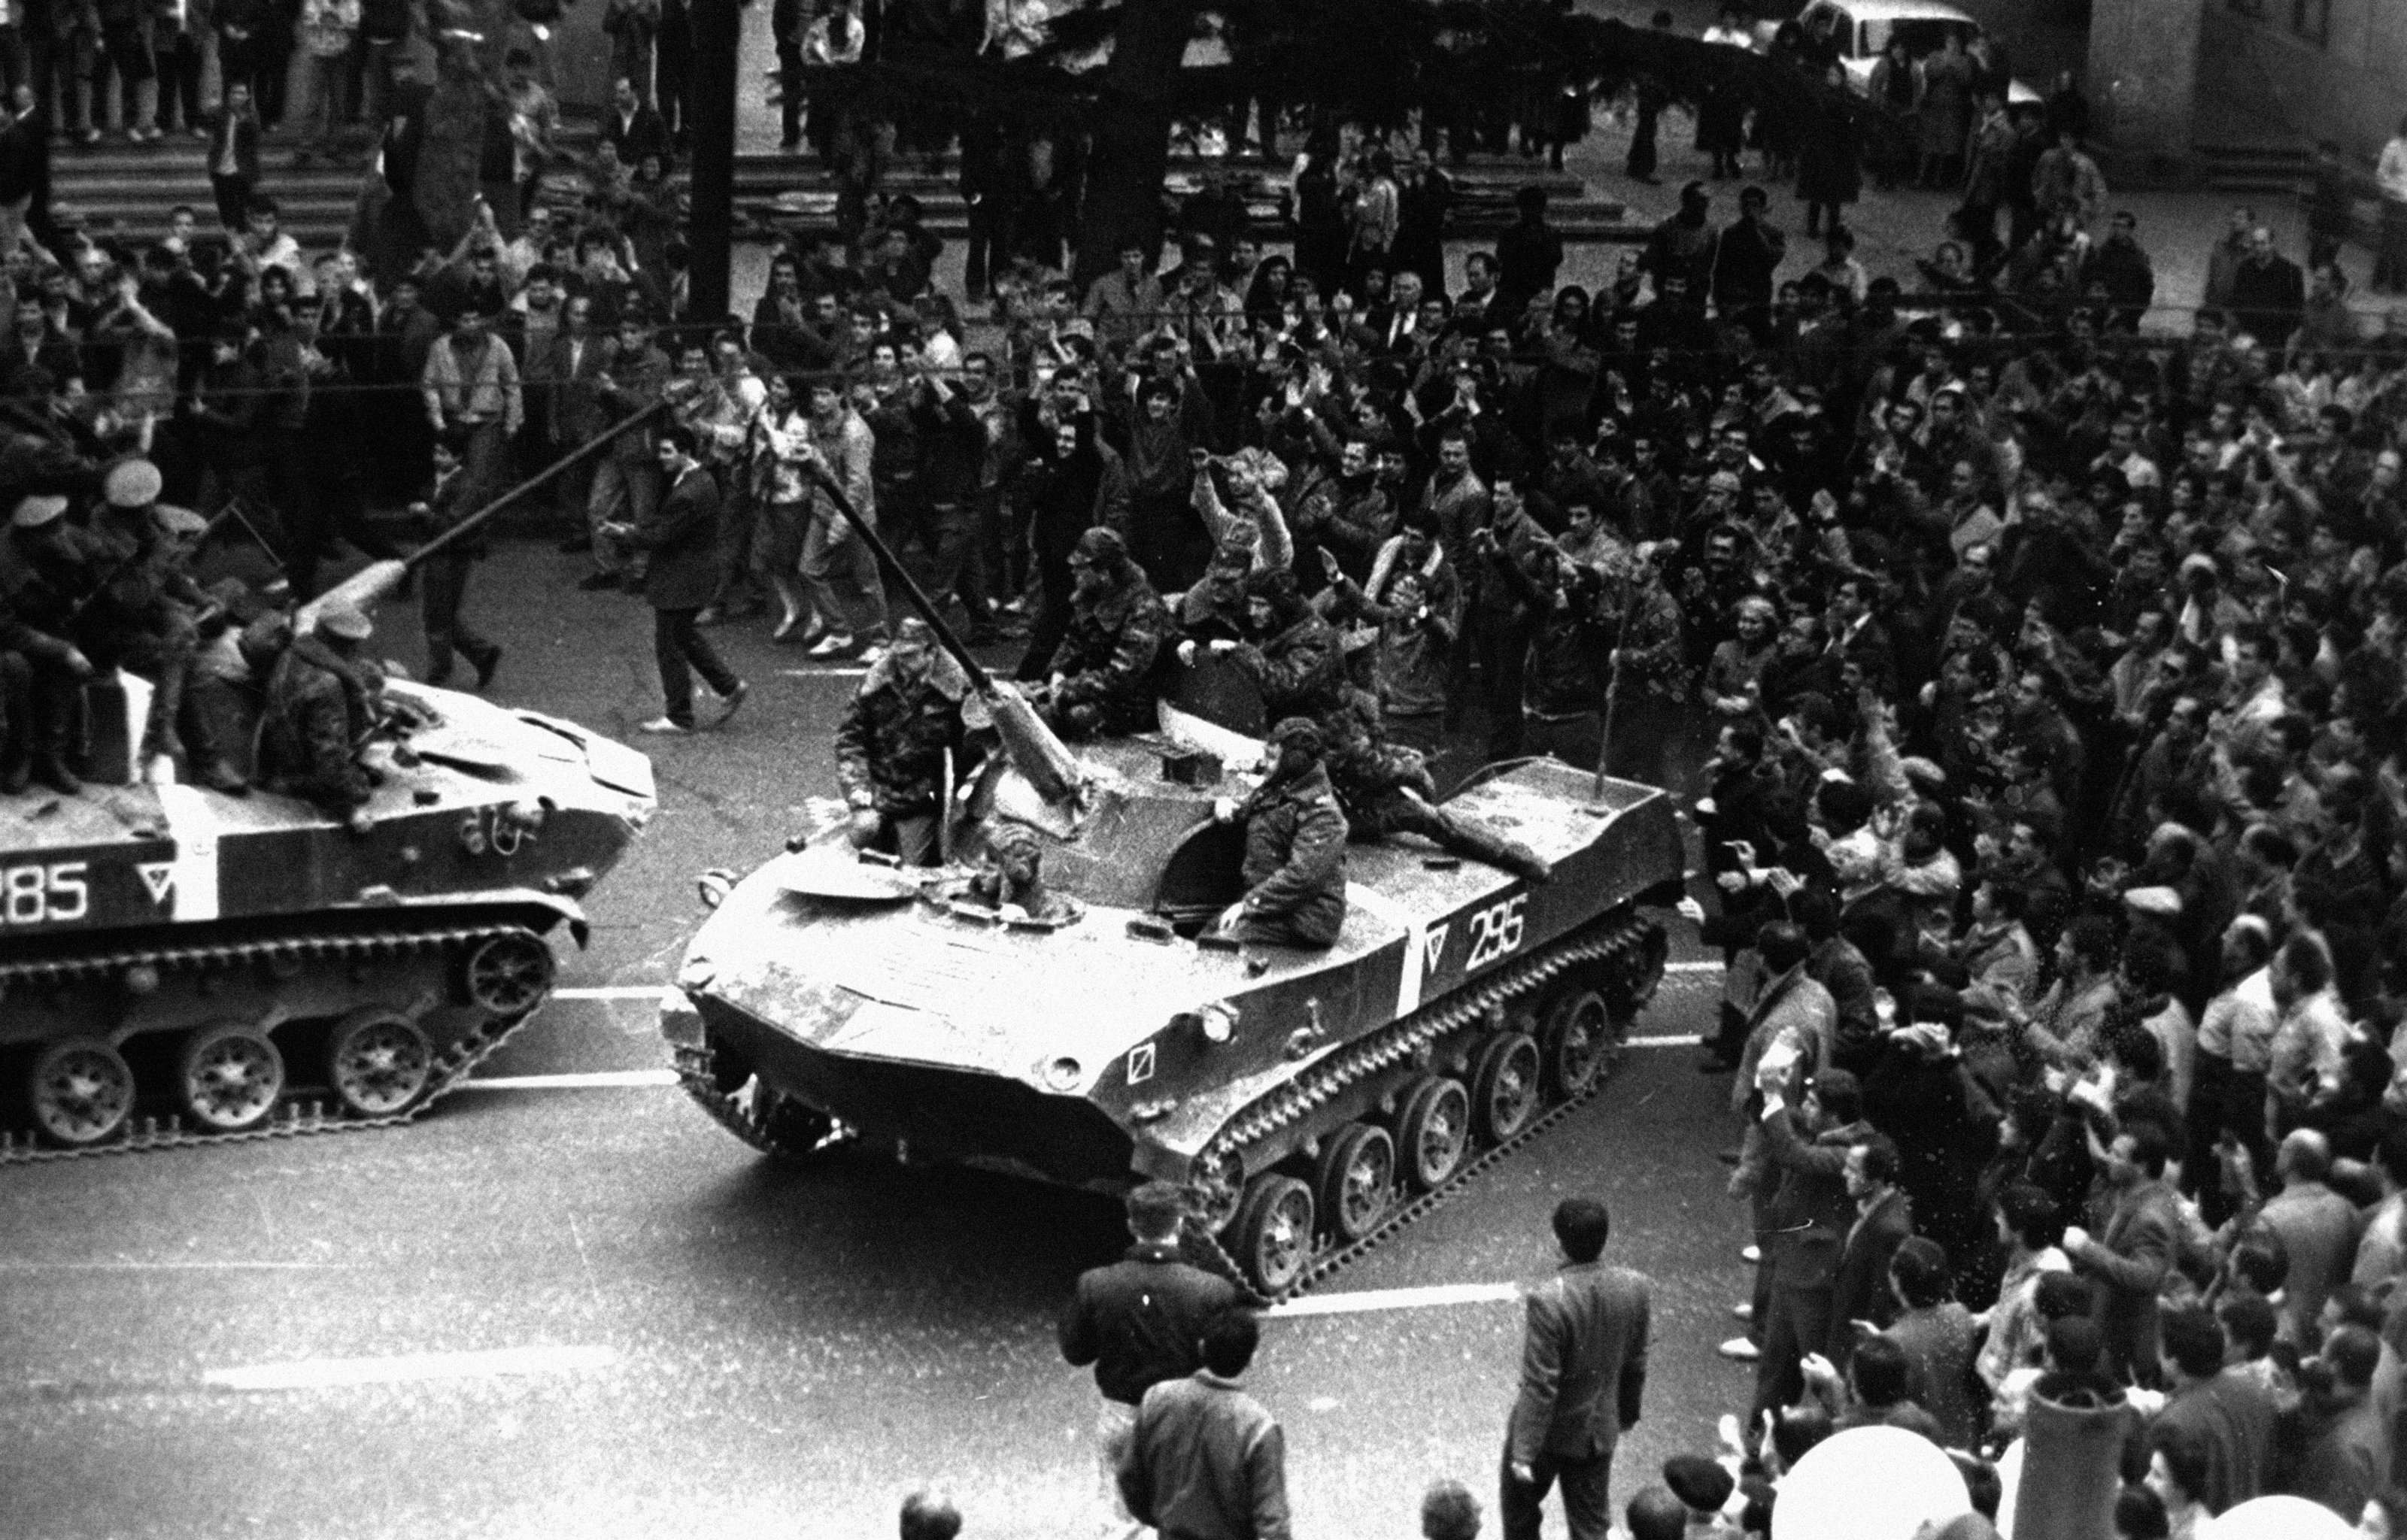 9 апреля 23 год. Демонстрация в Тбилиси 1989. Апрель 1989 Тбилиси. Митинг 9 апреля 1989 года в Тбилиси. Разгон митинга в Тбилиси в 1989.